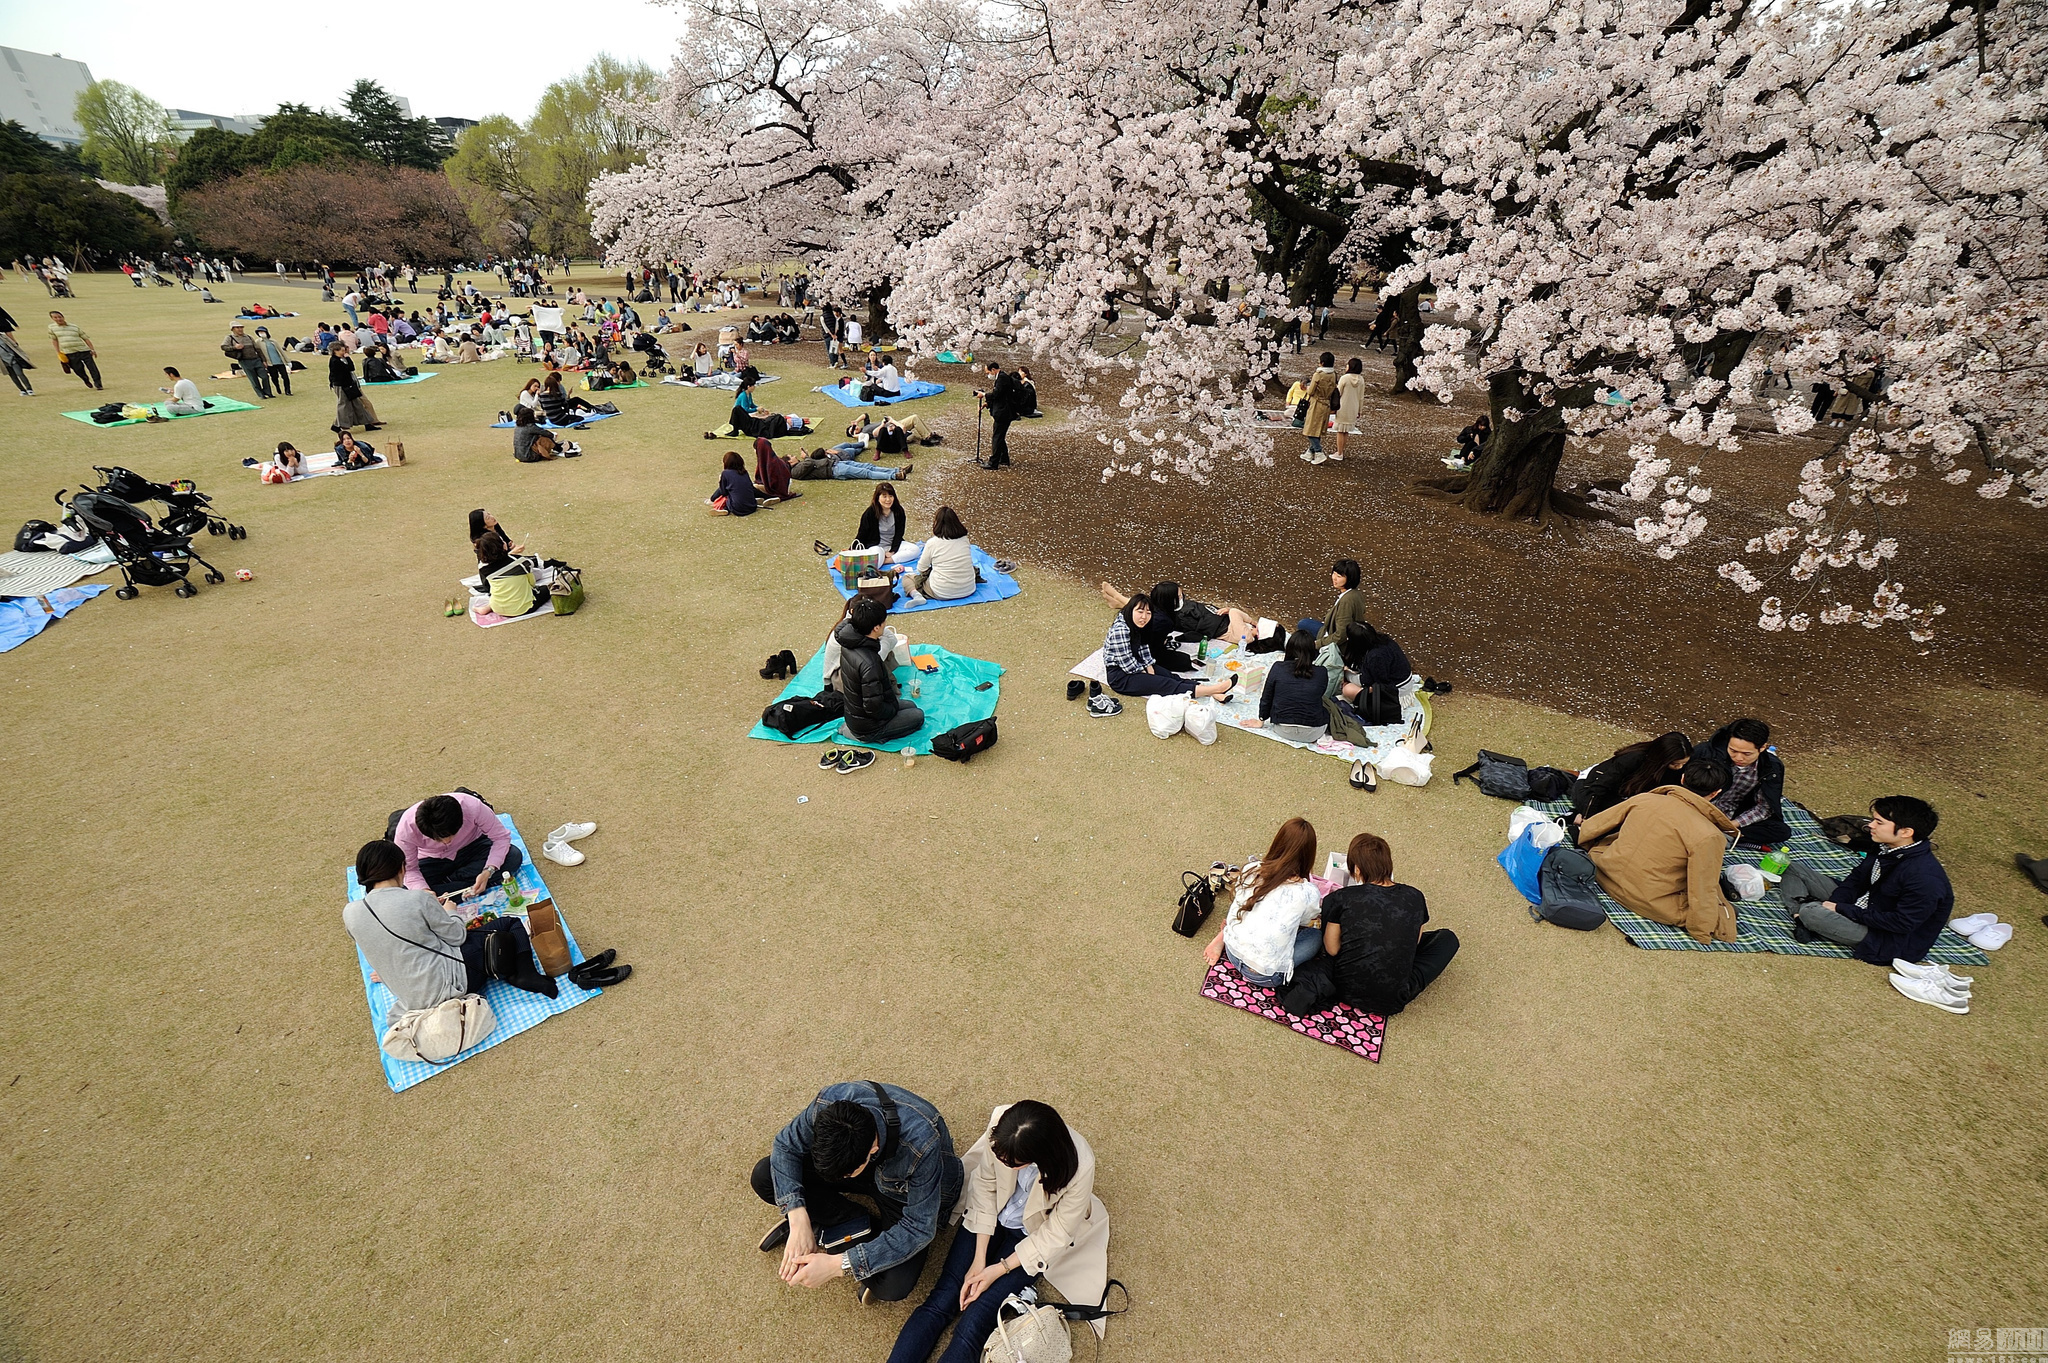 日本迎来赏樱季 男女老少欢聚樱花树下